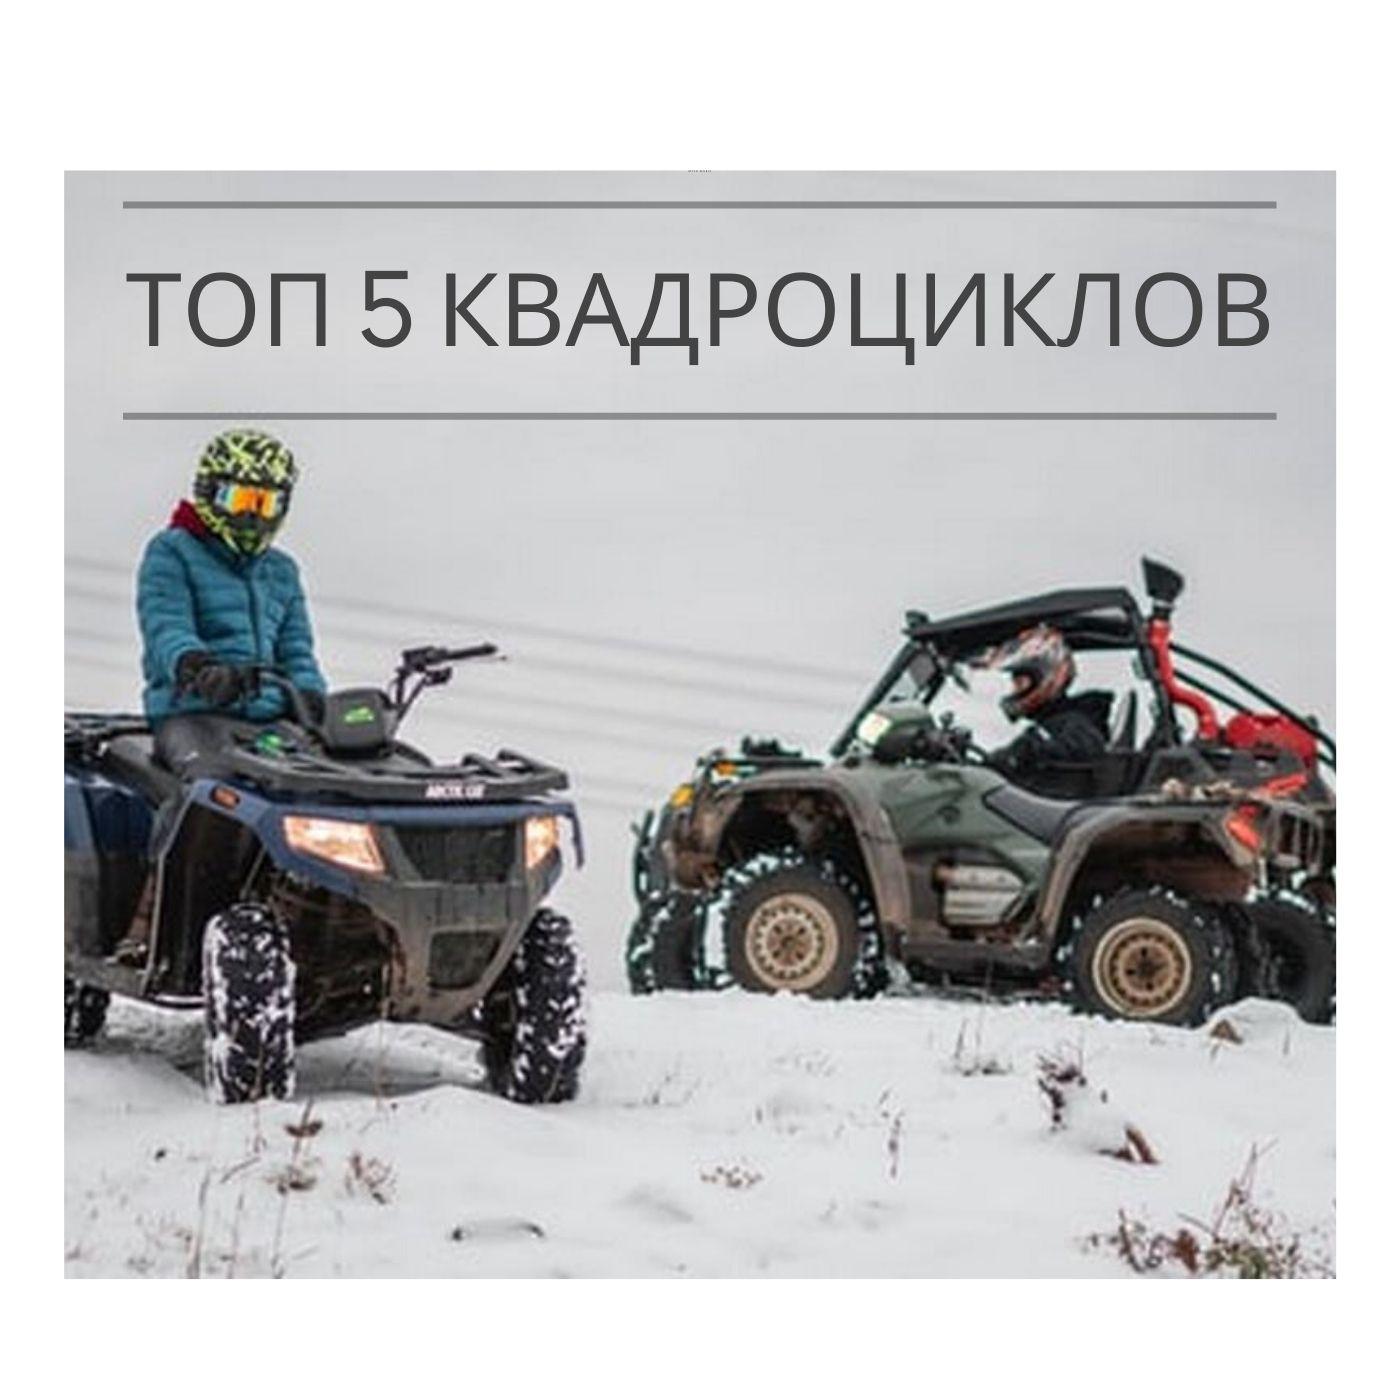 Вездеходы на шинах низкого давления - купить в России на официальном сайте Самурай